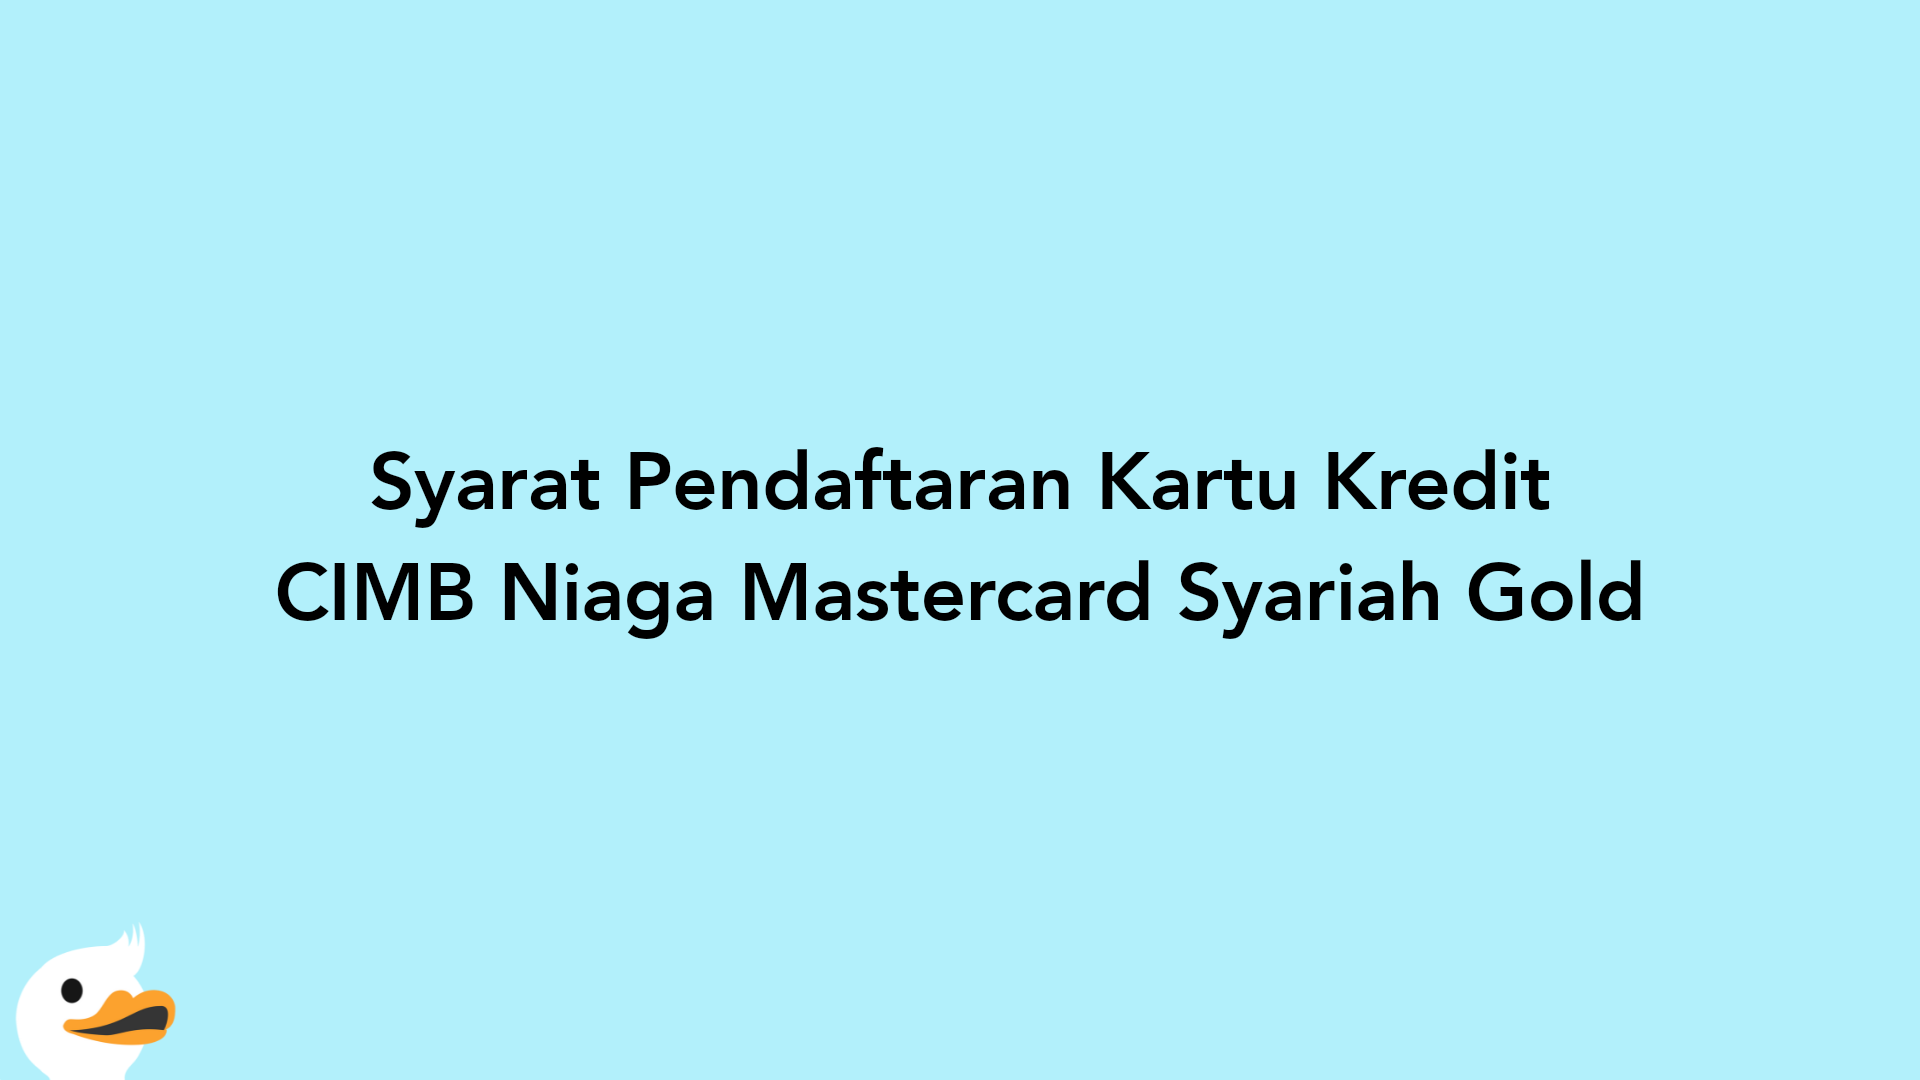 Syarat Pendaftaran Kartu Kredit CIMB Niaga Mastercard Syariah Gold